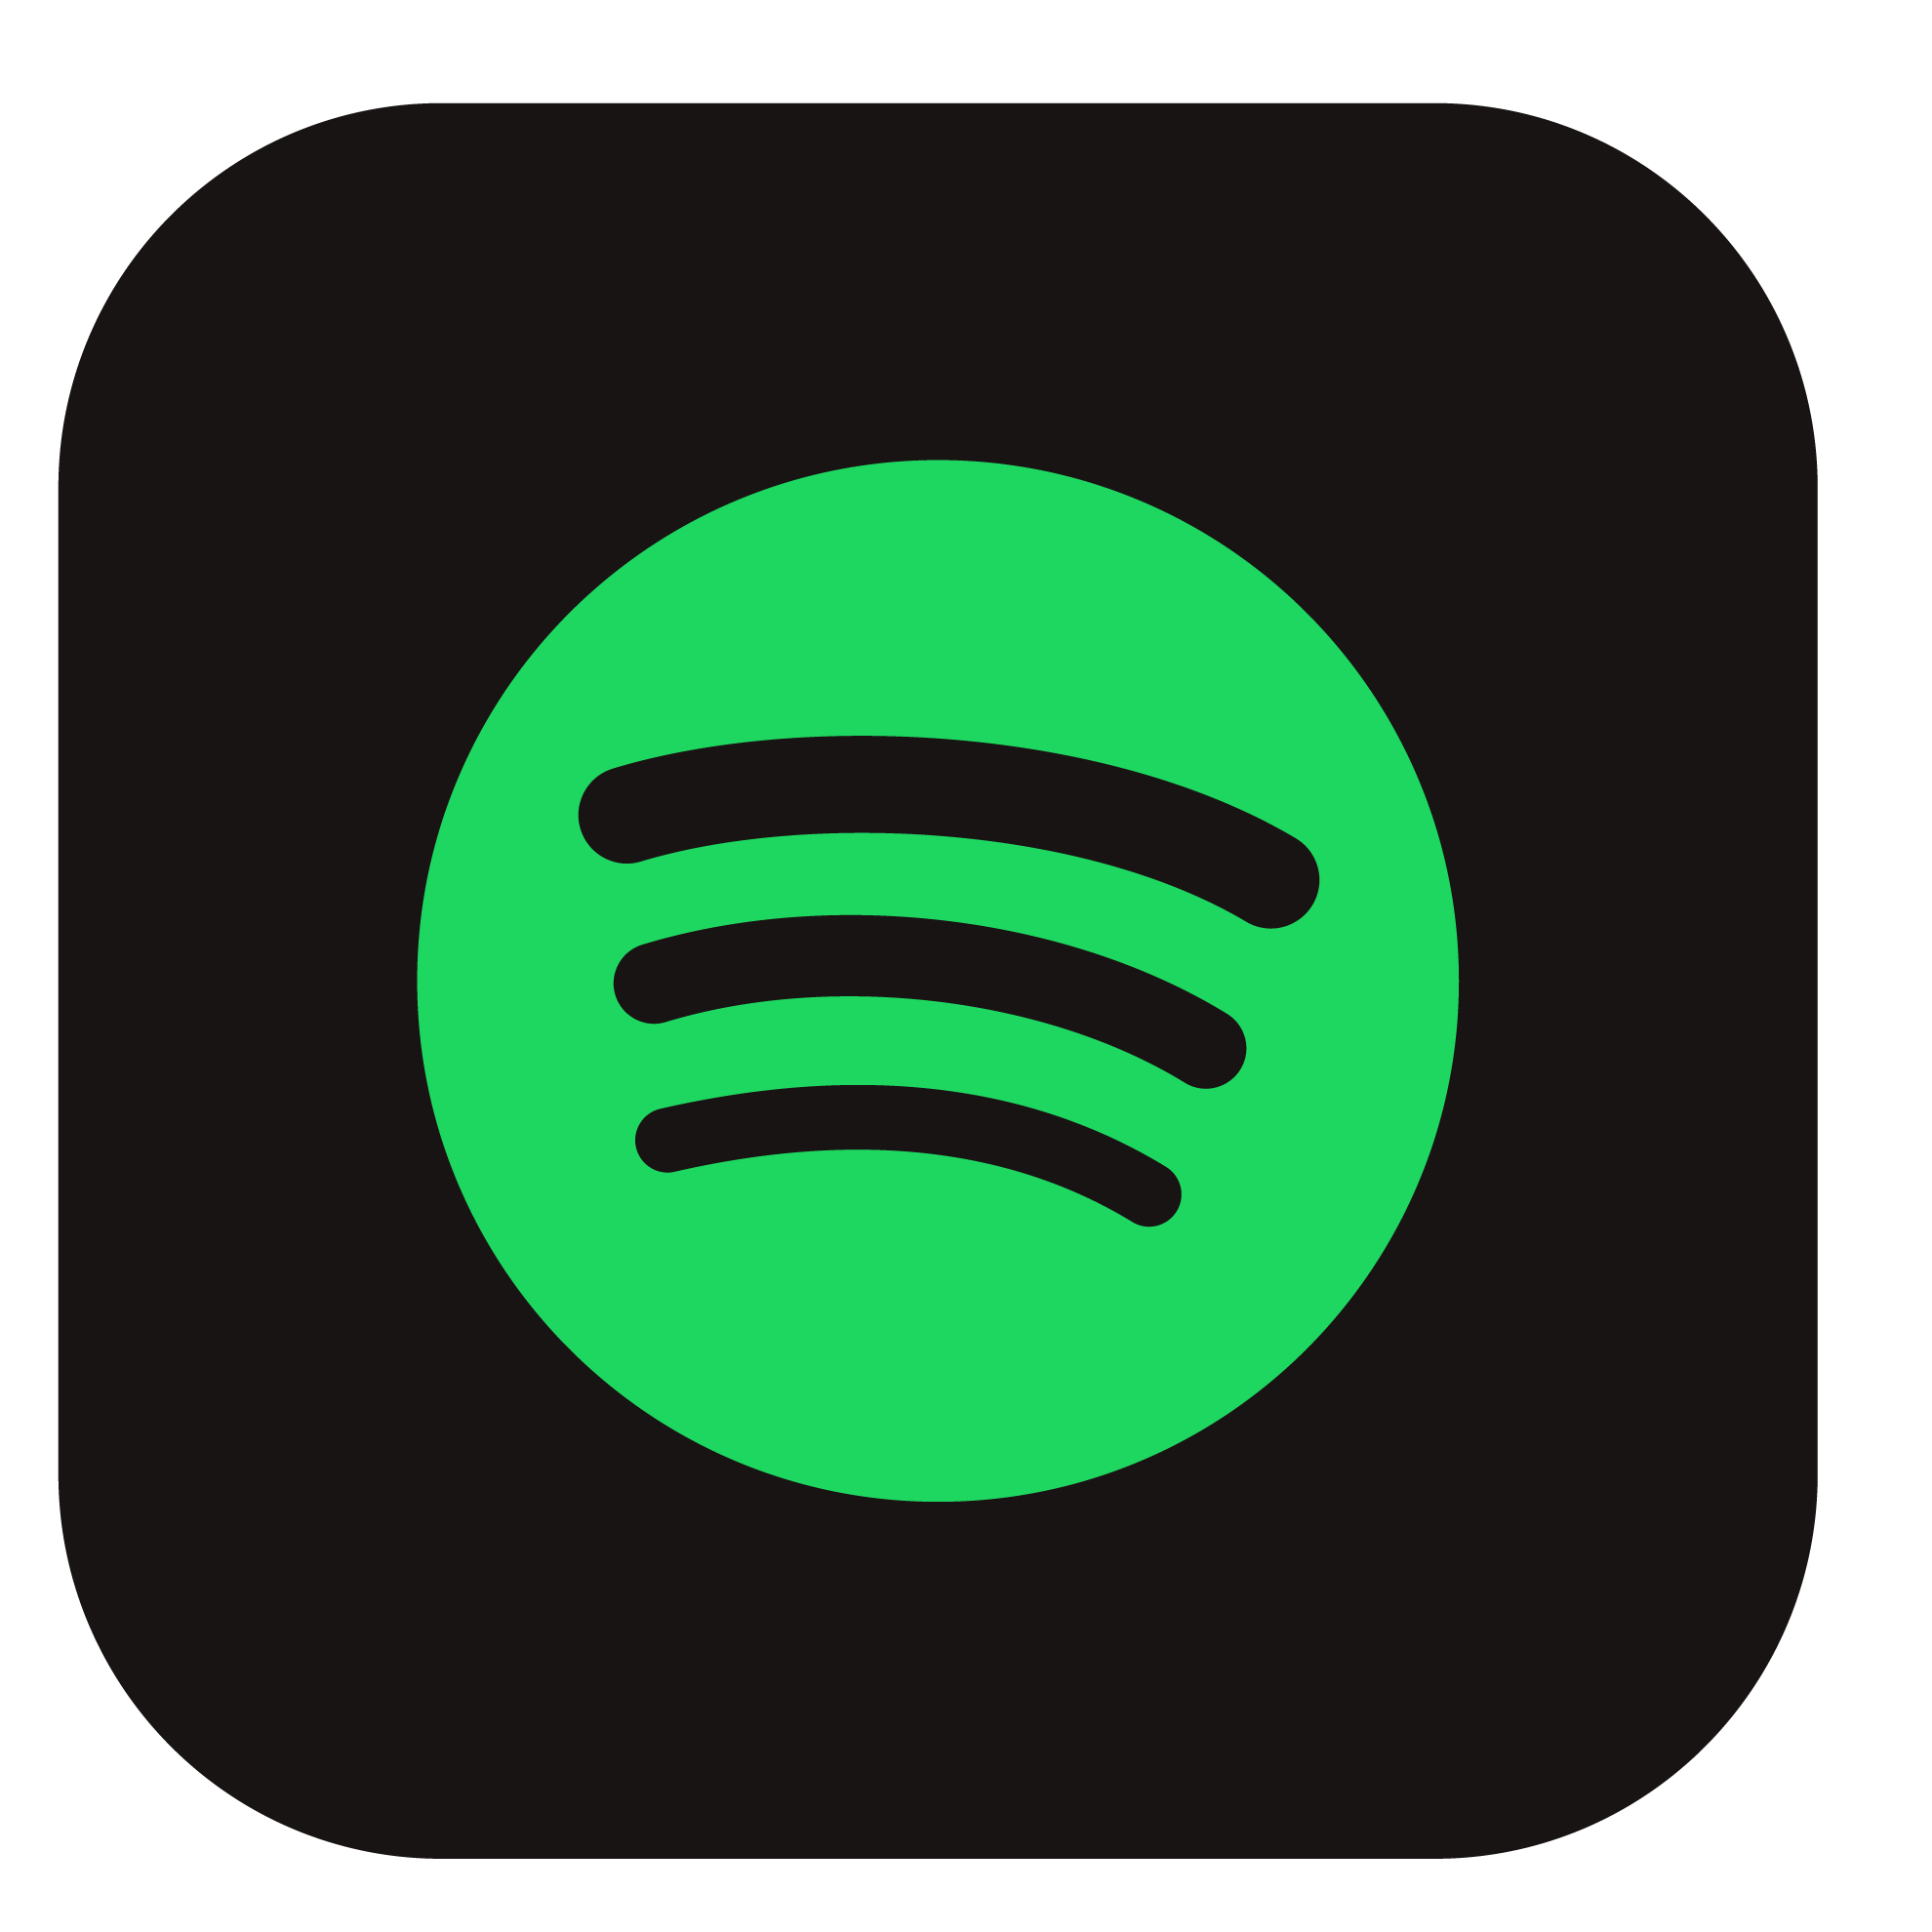 App de música Spotify incluido al realizar tu Portabilidad